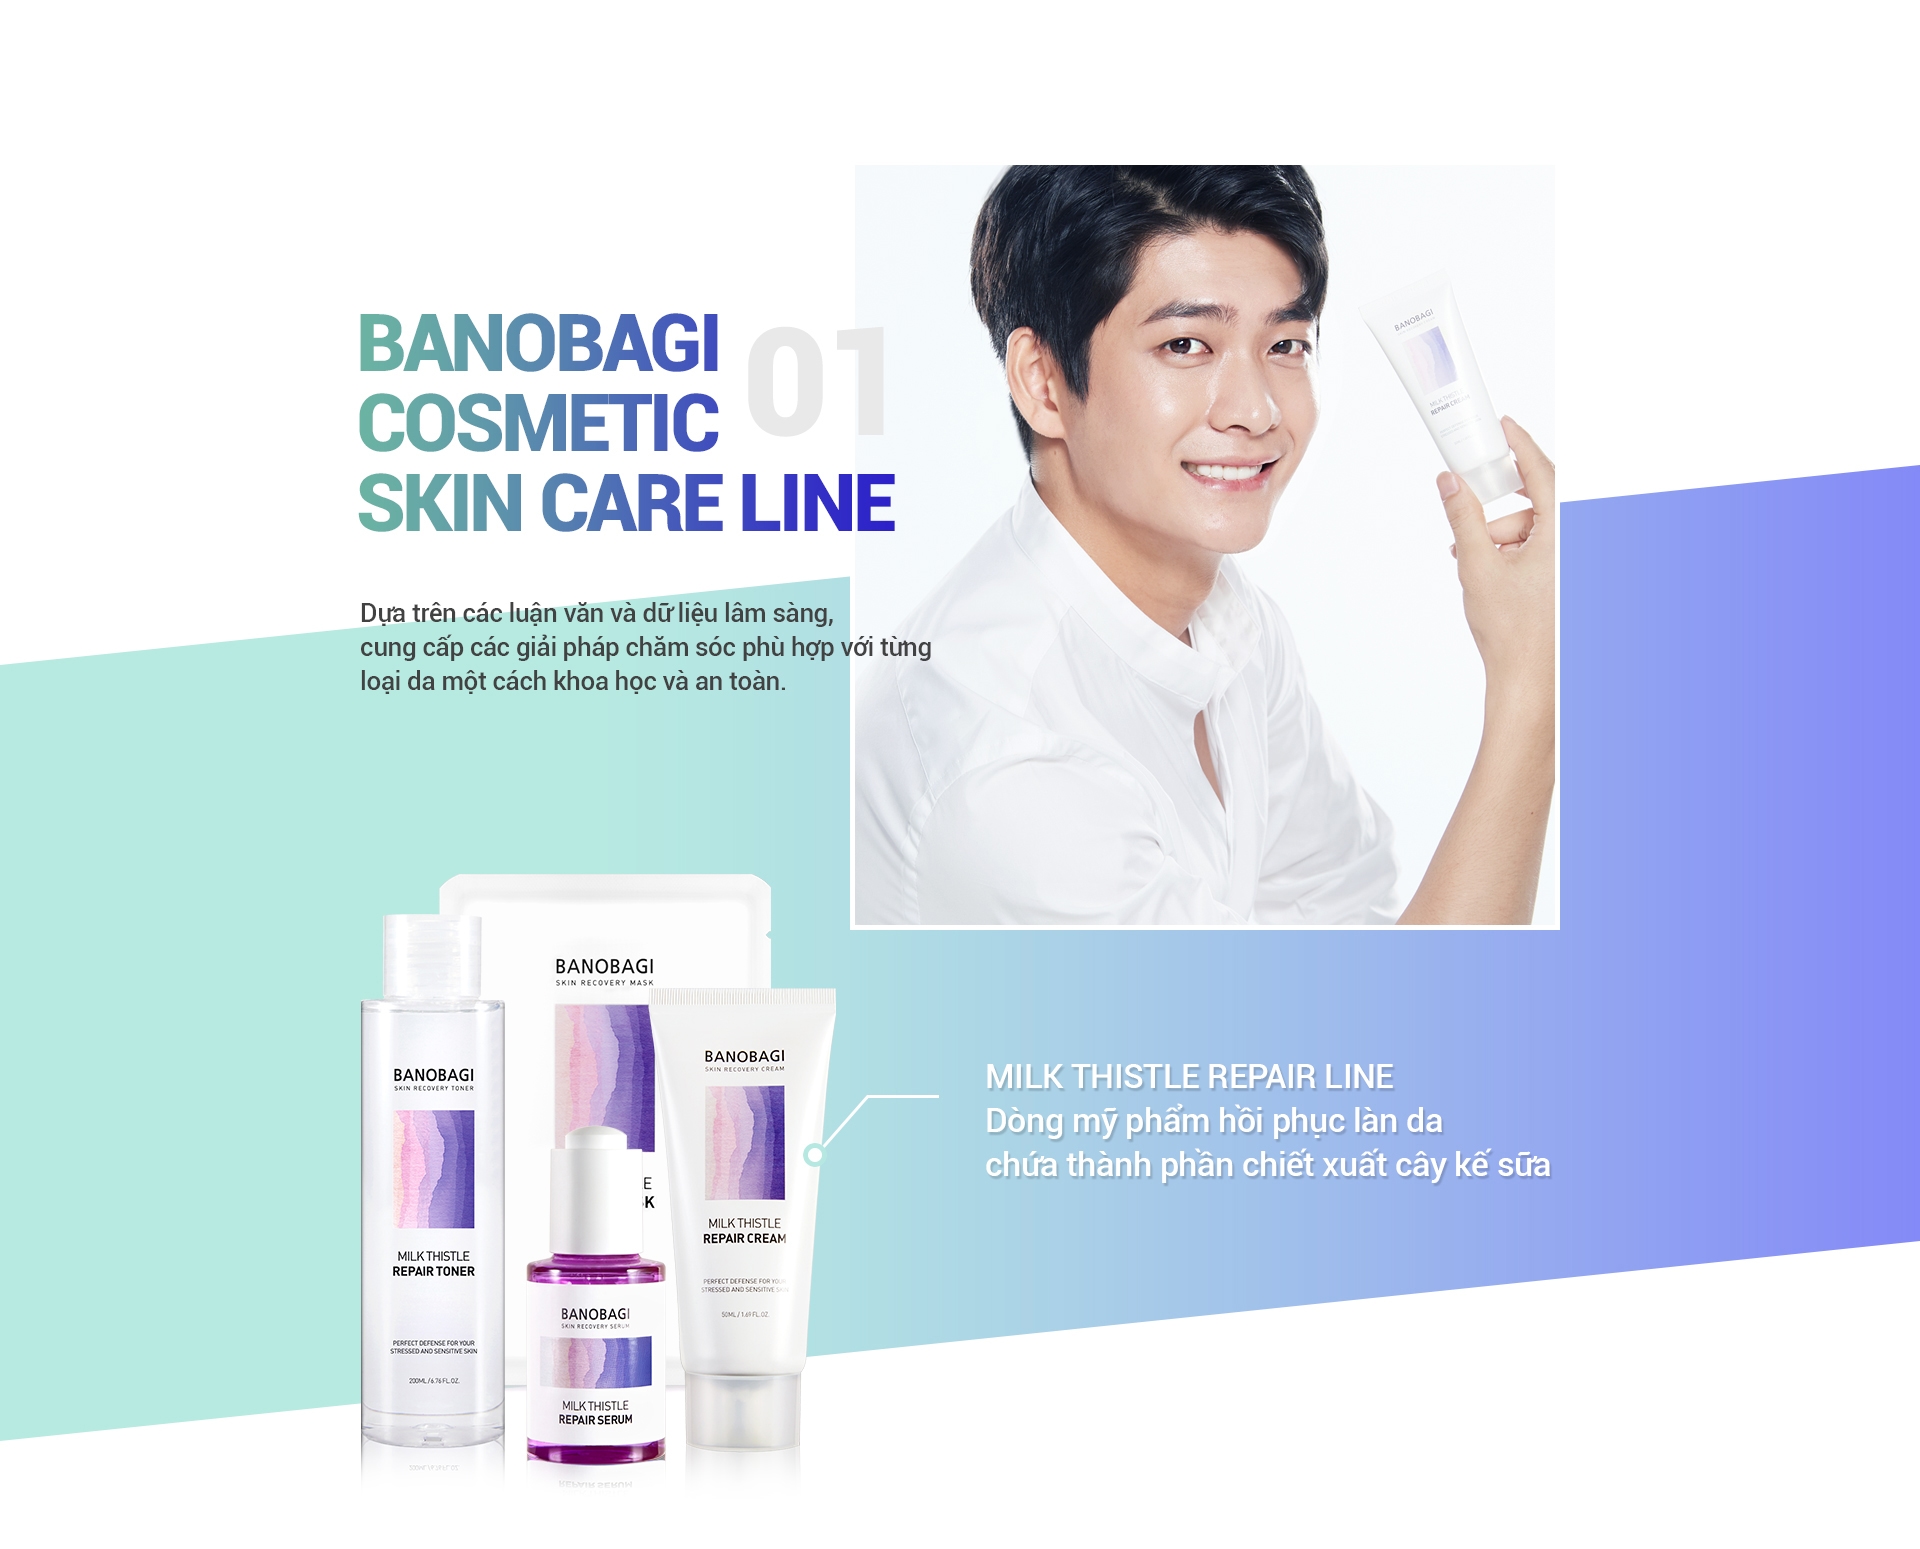 01 Banobagi Cosmetic SKIN CARE line